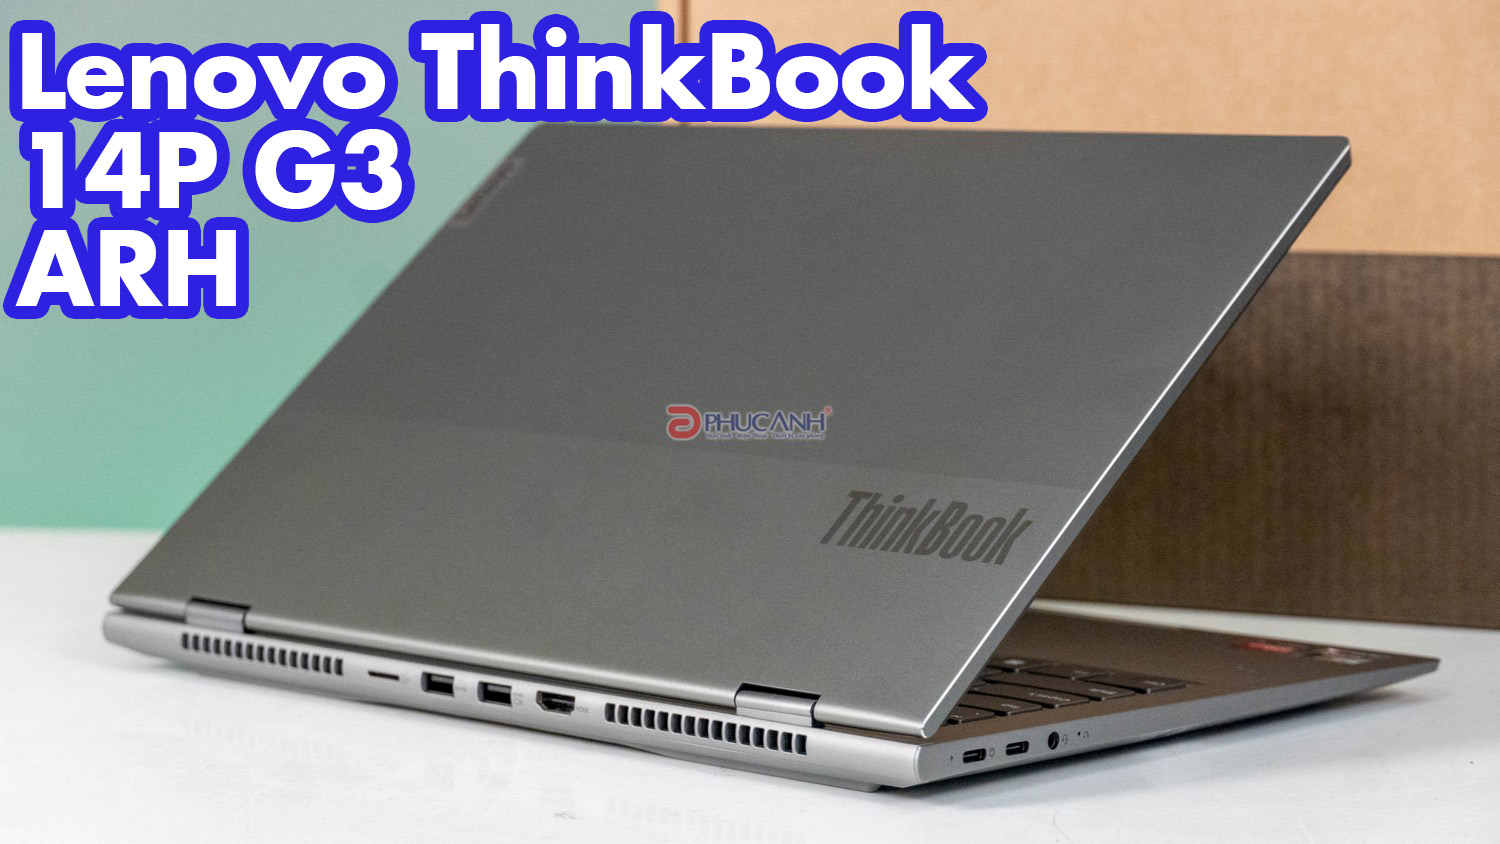 Đánh giá Laptop Lenovo ThinkBook 14P G3 ARH - Ấn tường đến từ CPU AMD cùng màn hình cực chất